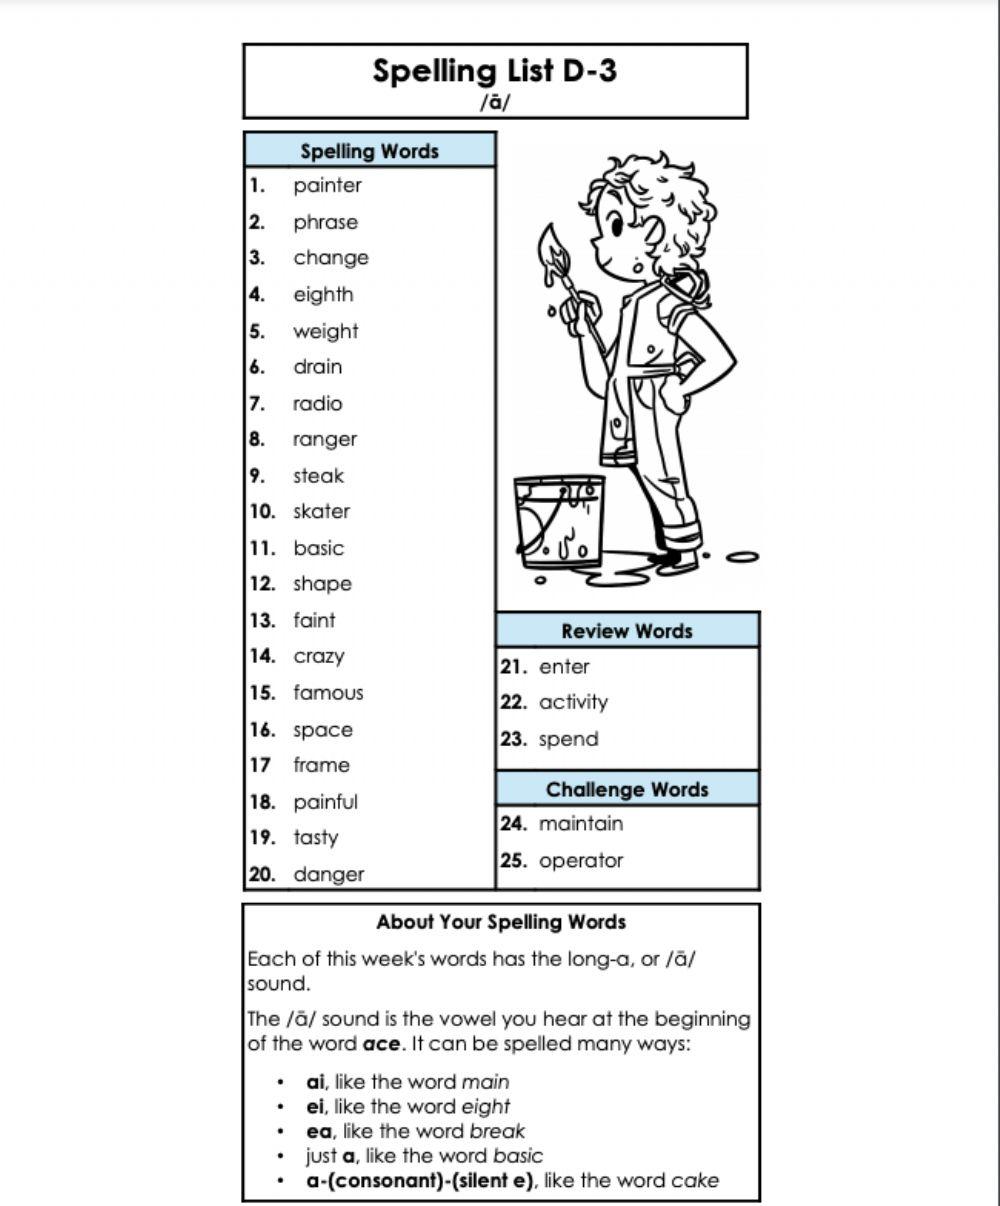 Spelling list d-3 5th grade